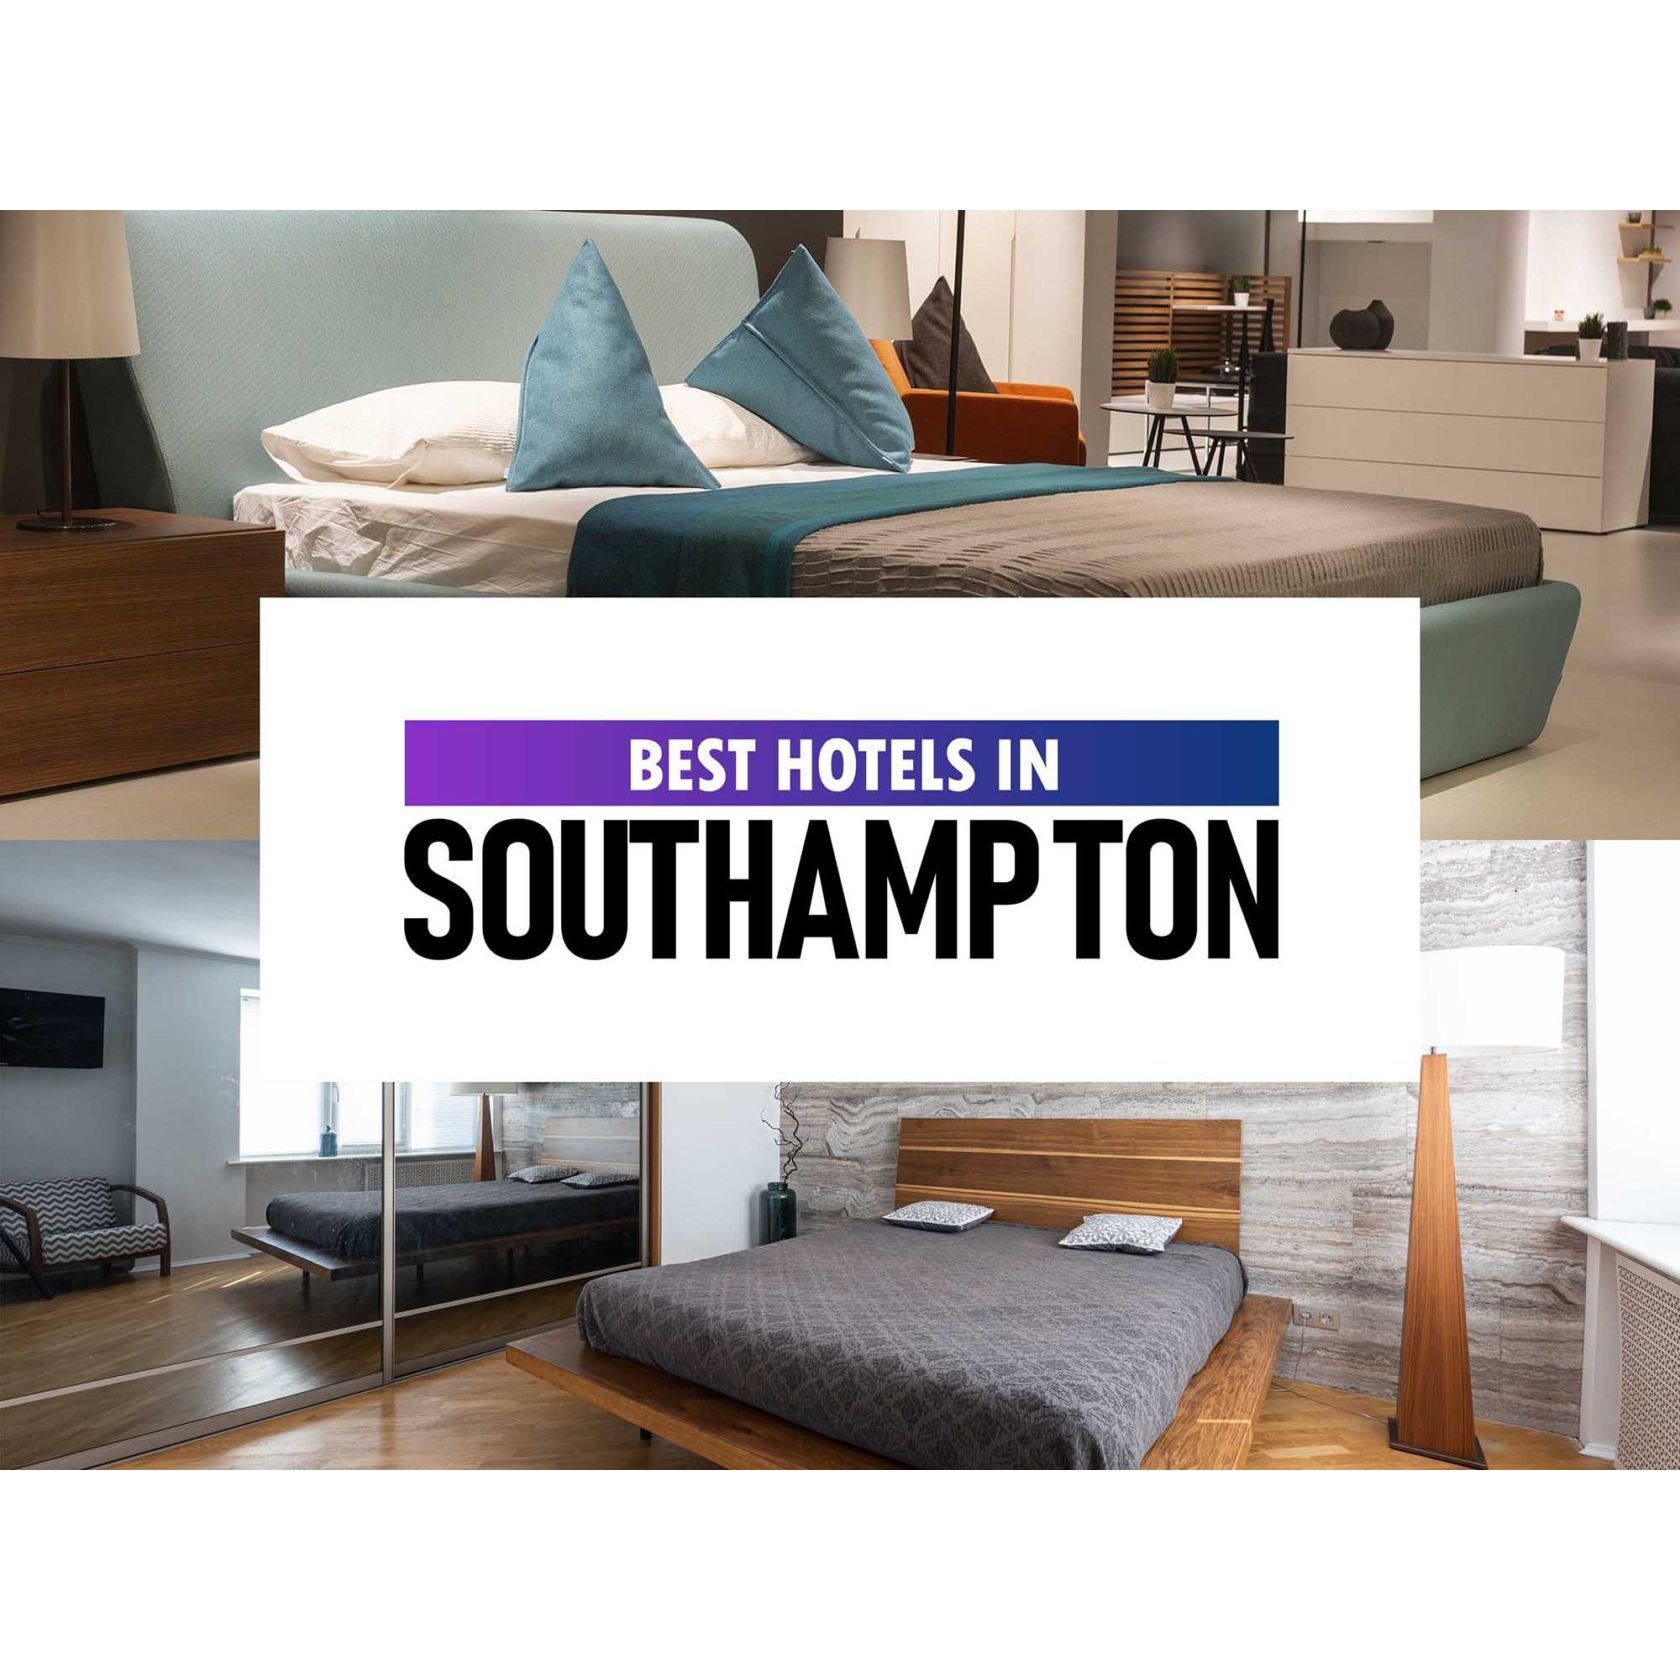 Best Hotels in Southampton